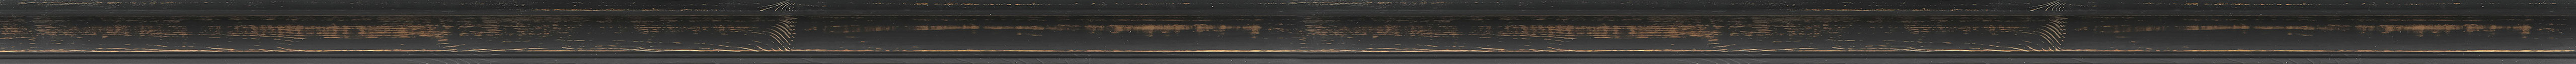 Black decape scoop frame frame